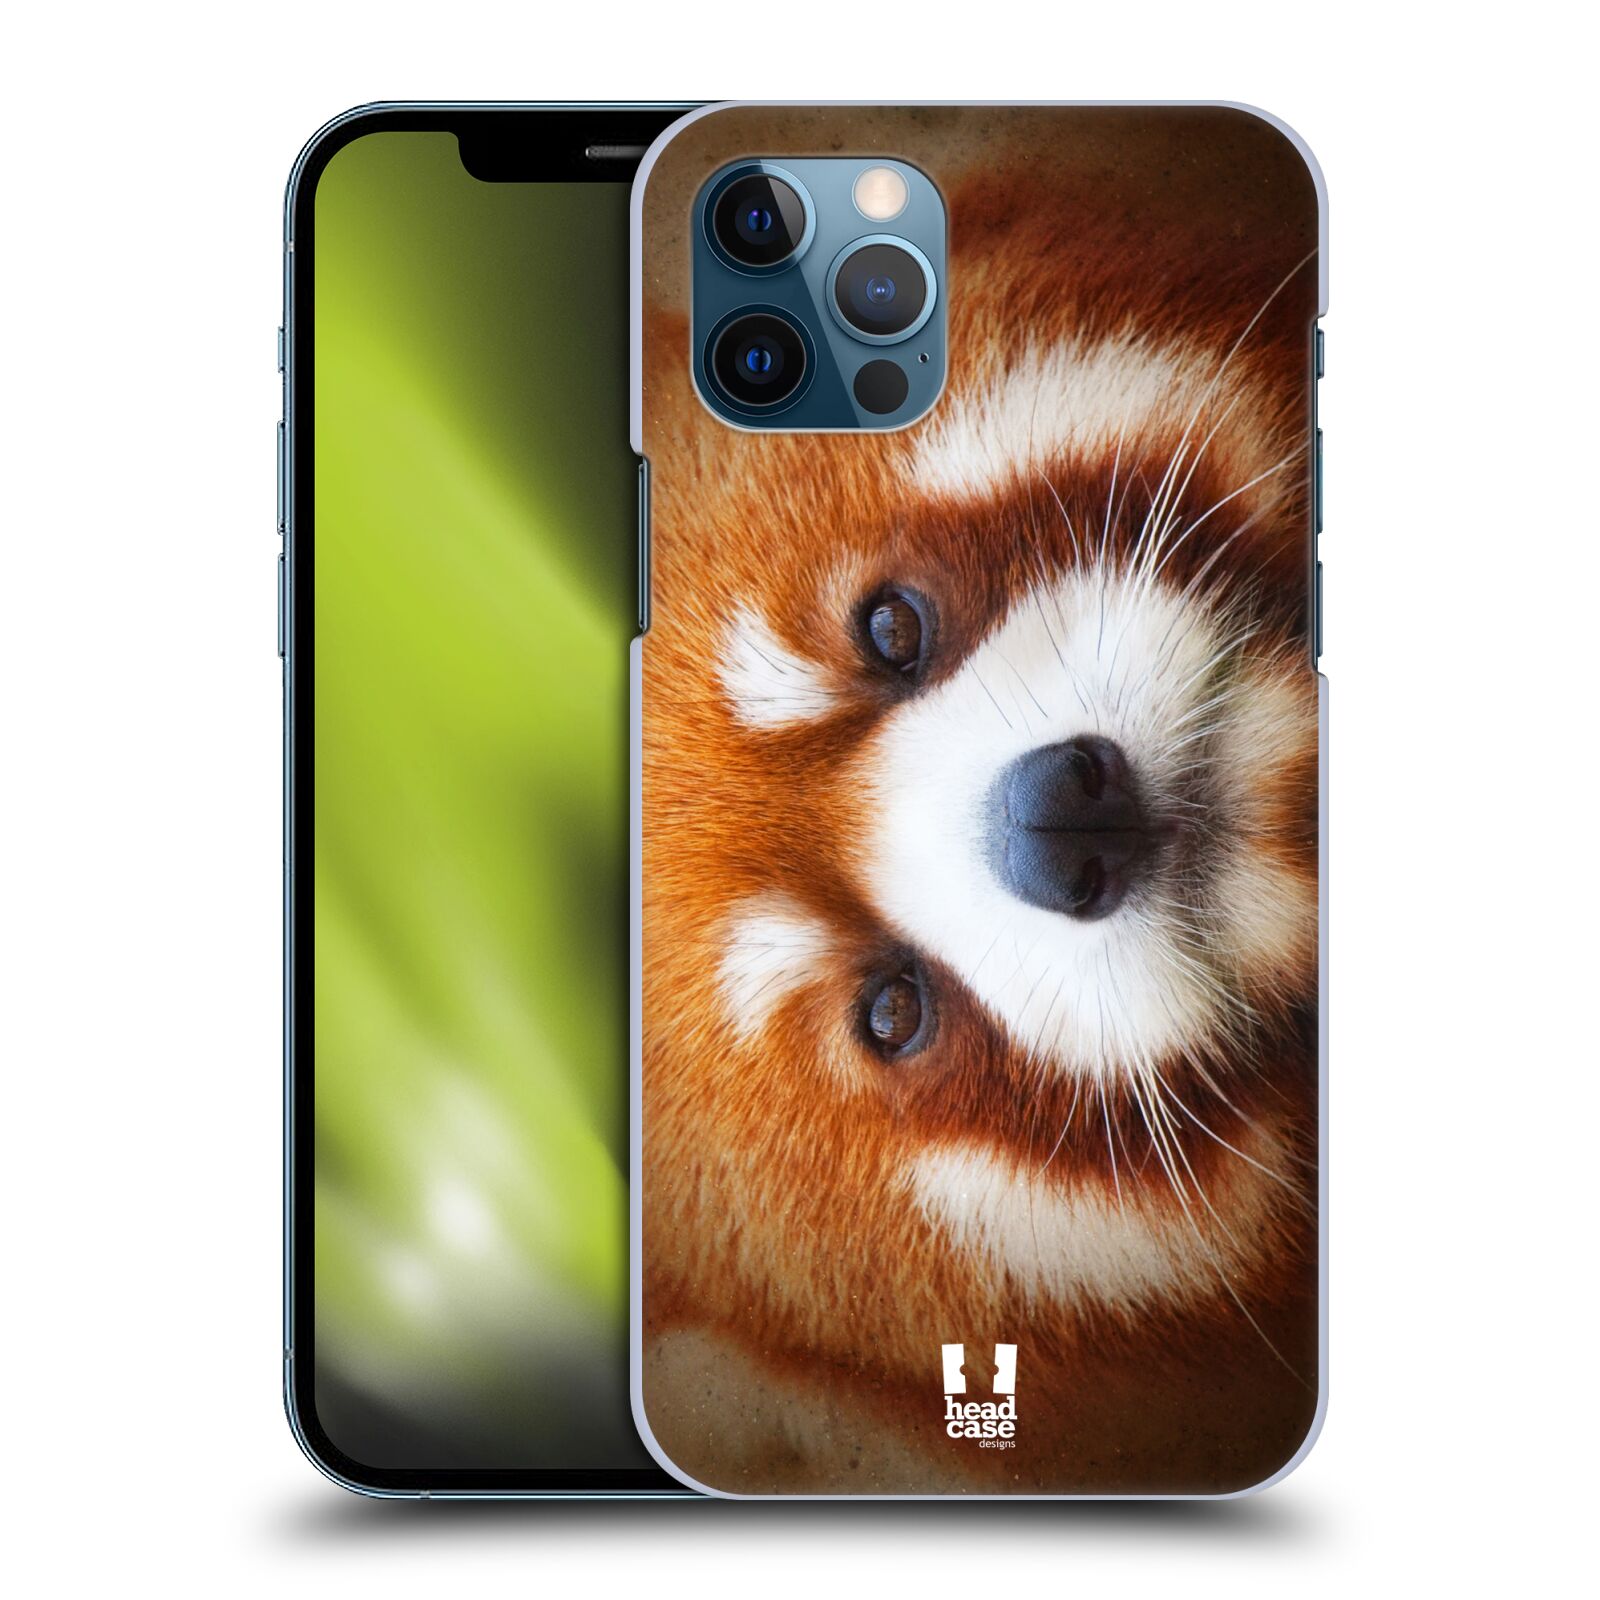 HEAD CASE plastový obal na mobil Apple Iphone 12 / Iphone 12 PRO vzor Zvířecí tváře 2 medvěd panda rudá